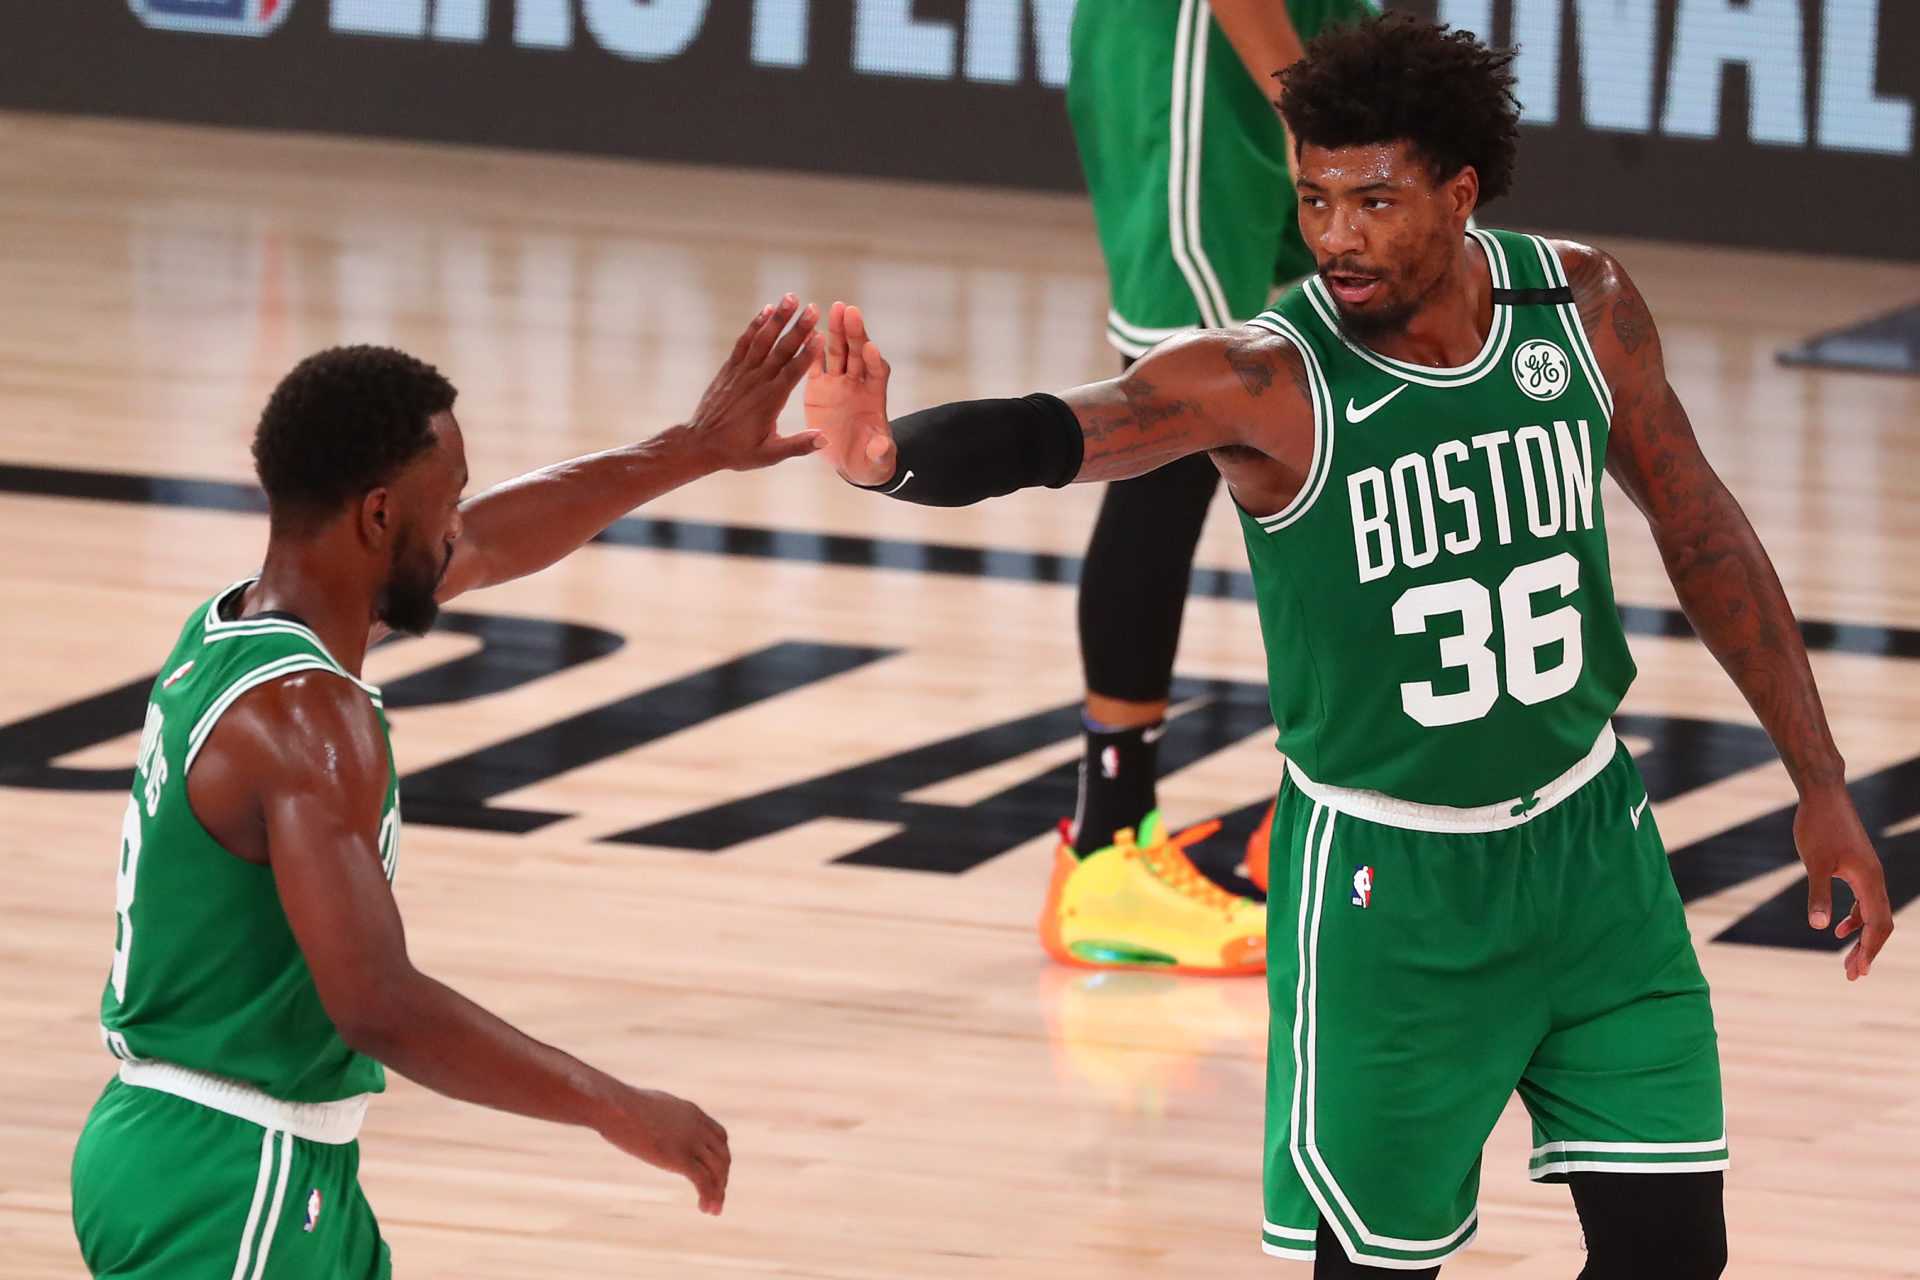 REGARDER: La liste des Celtics de Boston bat la chaleur des vestiaires de la meilleure façon possible